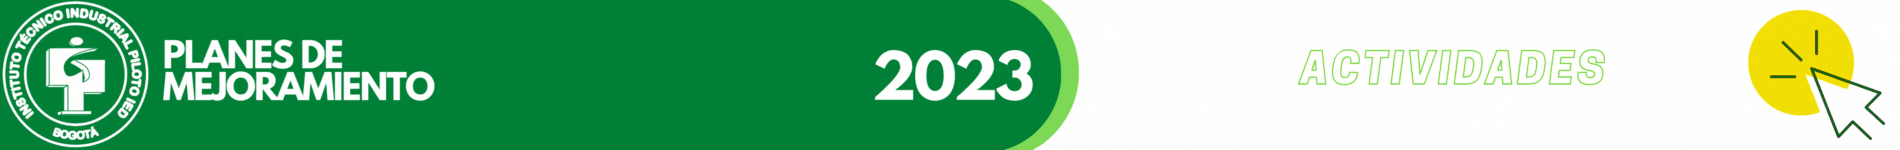 PLANES DE MEJORAMIENTO 2023